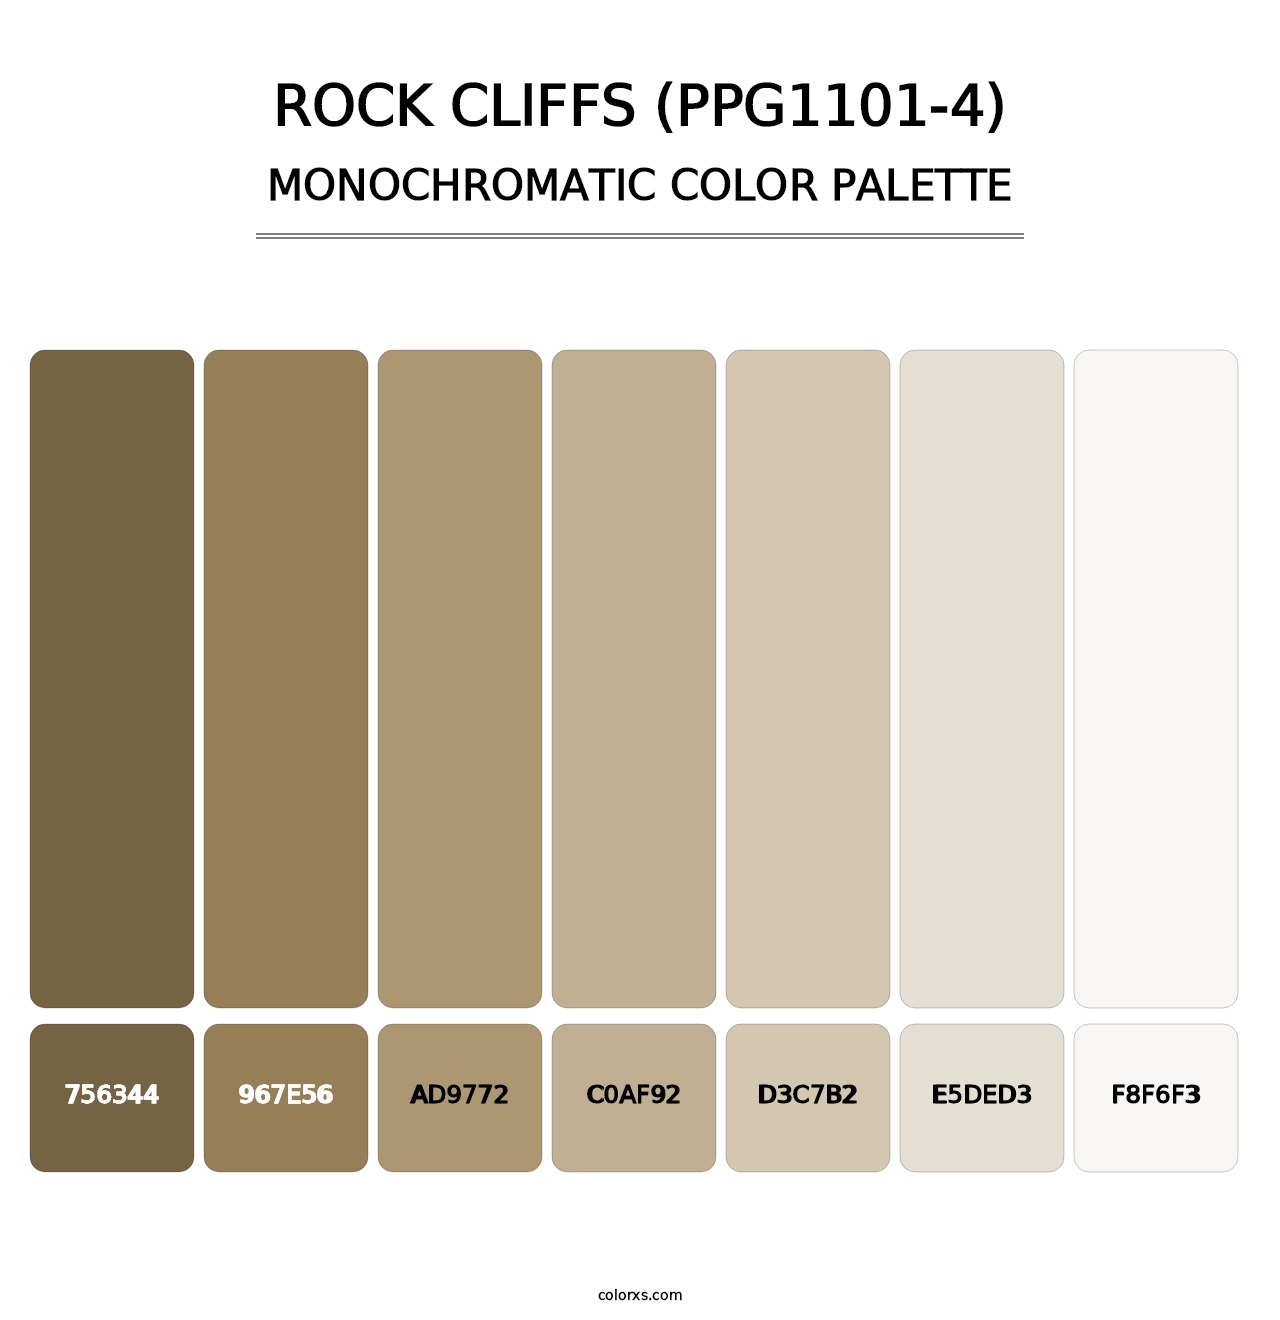 Rock Cliffs (PPG1101-4) - Monochromatic Color Palette